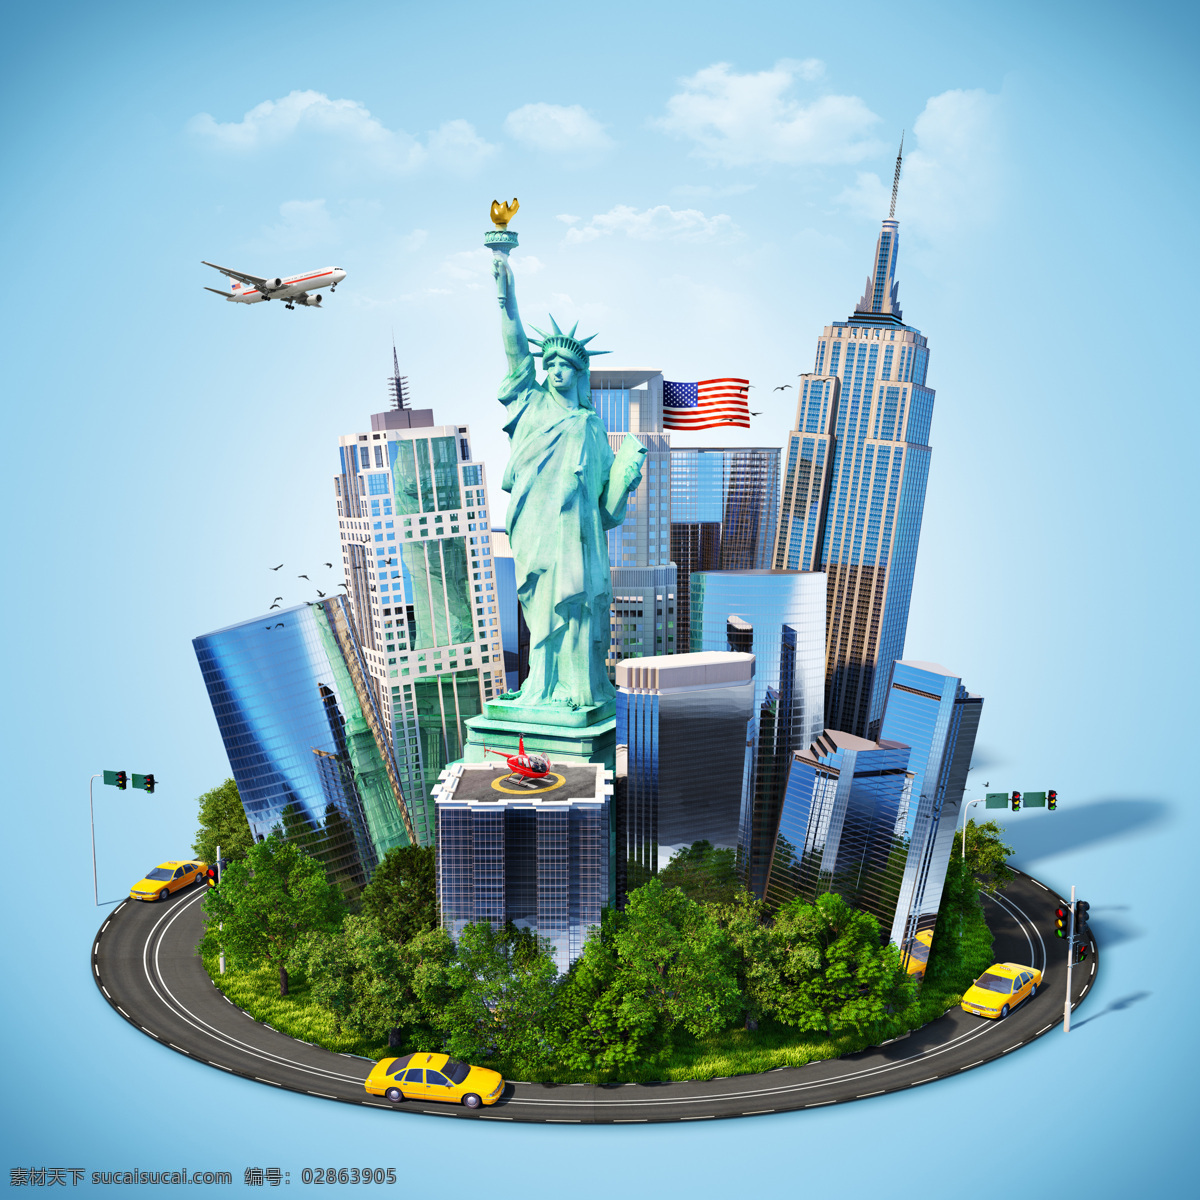 创意环球旅行 城市 旅行 飞机 云朵 自由女神像 建筑